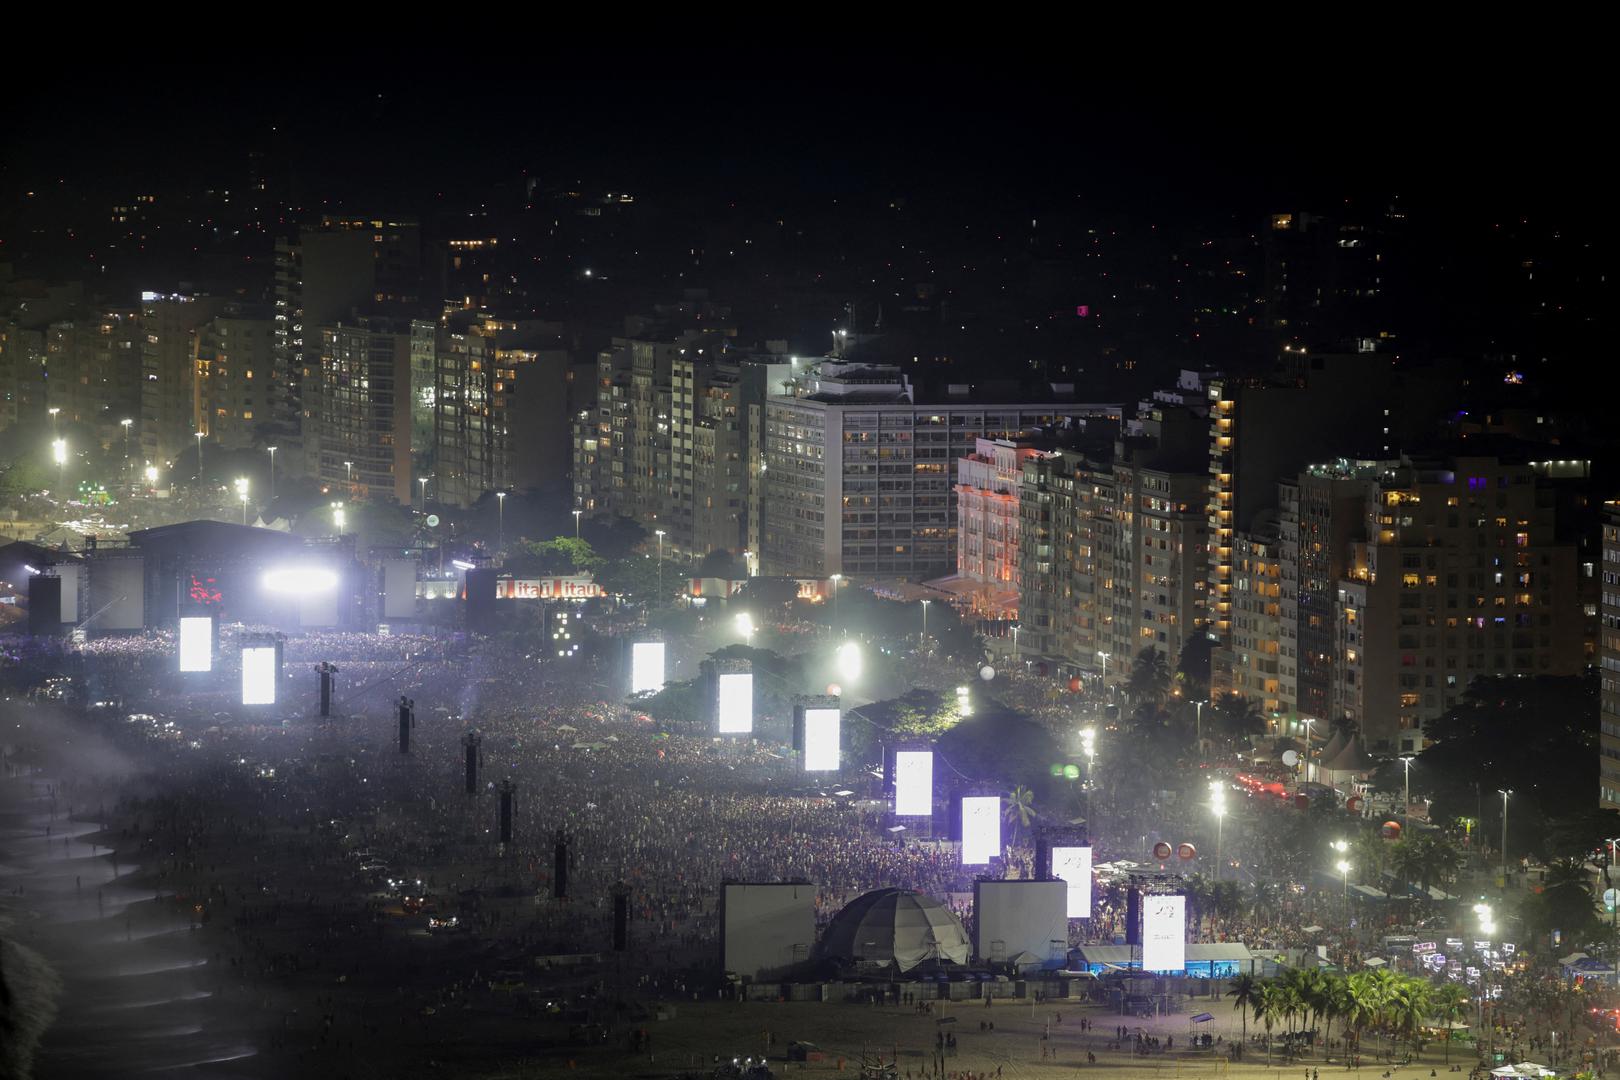 Područje oko poznate plaže Rio de Janeira bilo je ispunjeno gomilom koju je grad procijenio na 1,6 milijuna ljudi.